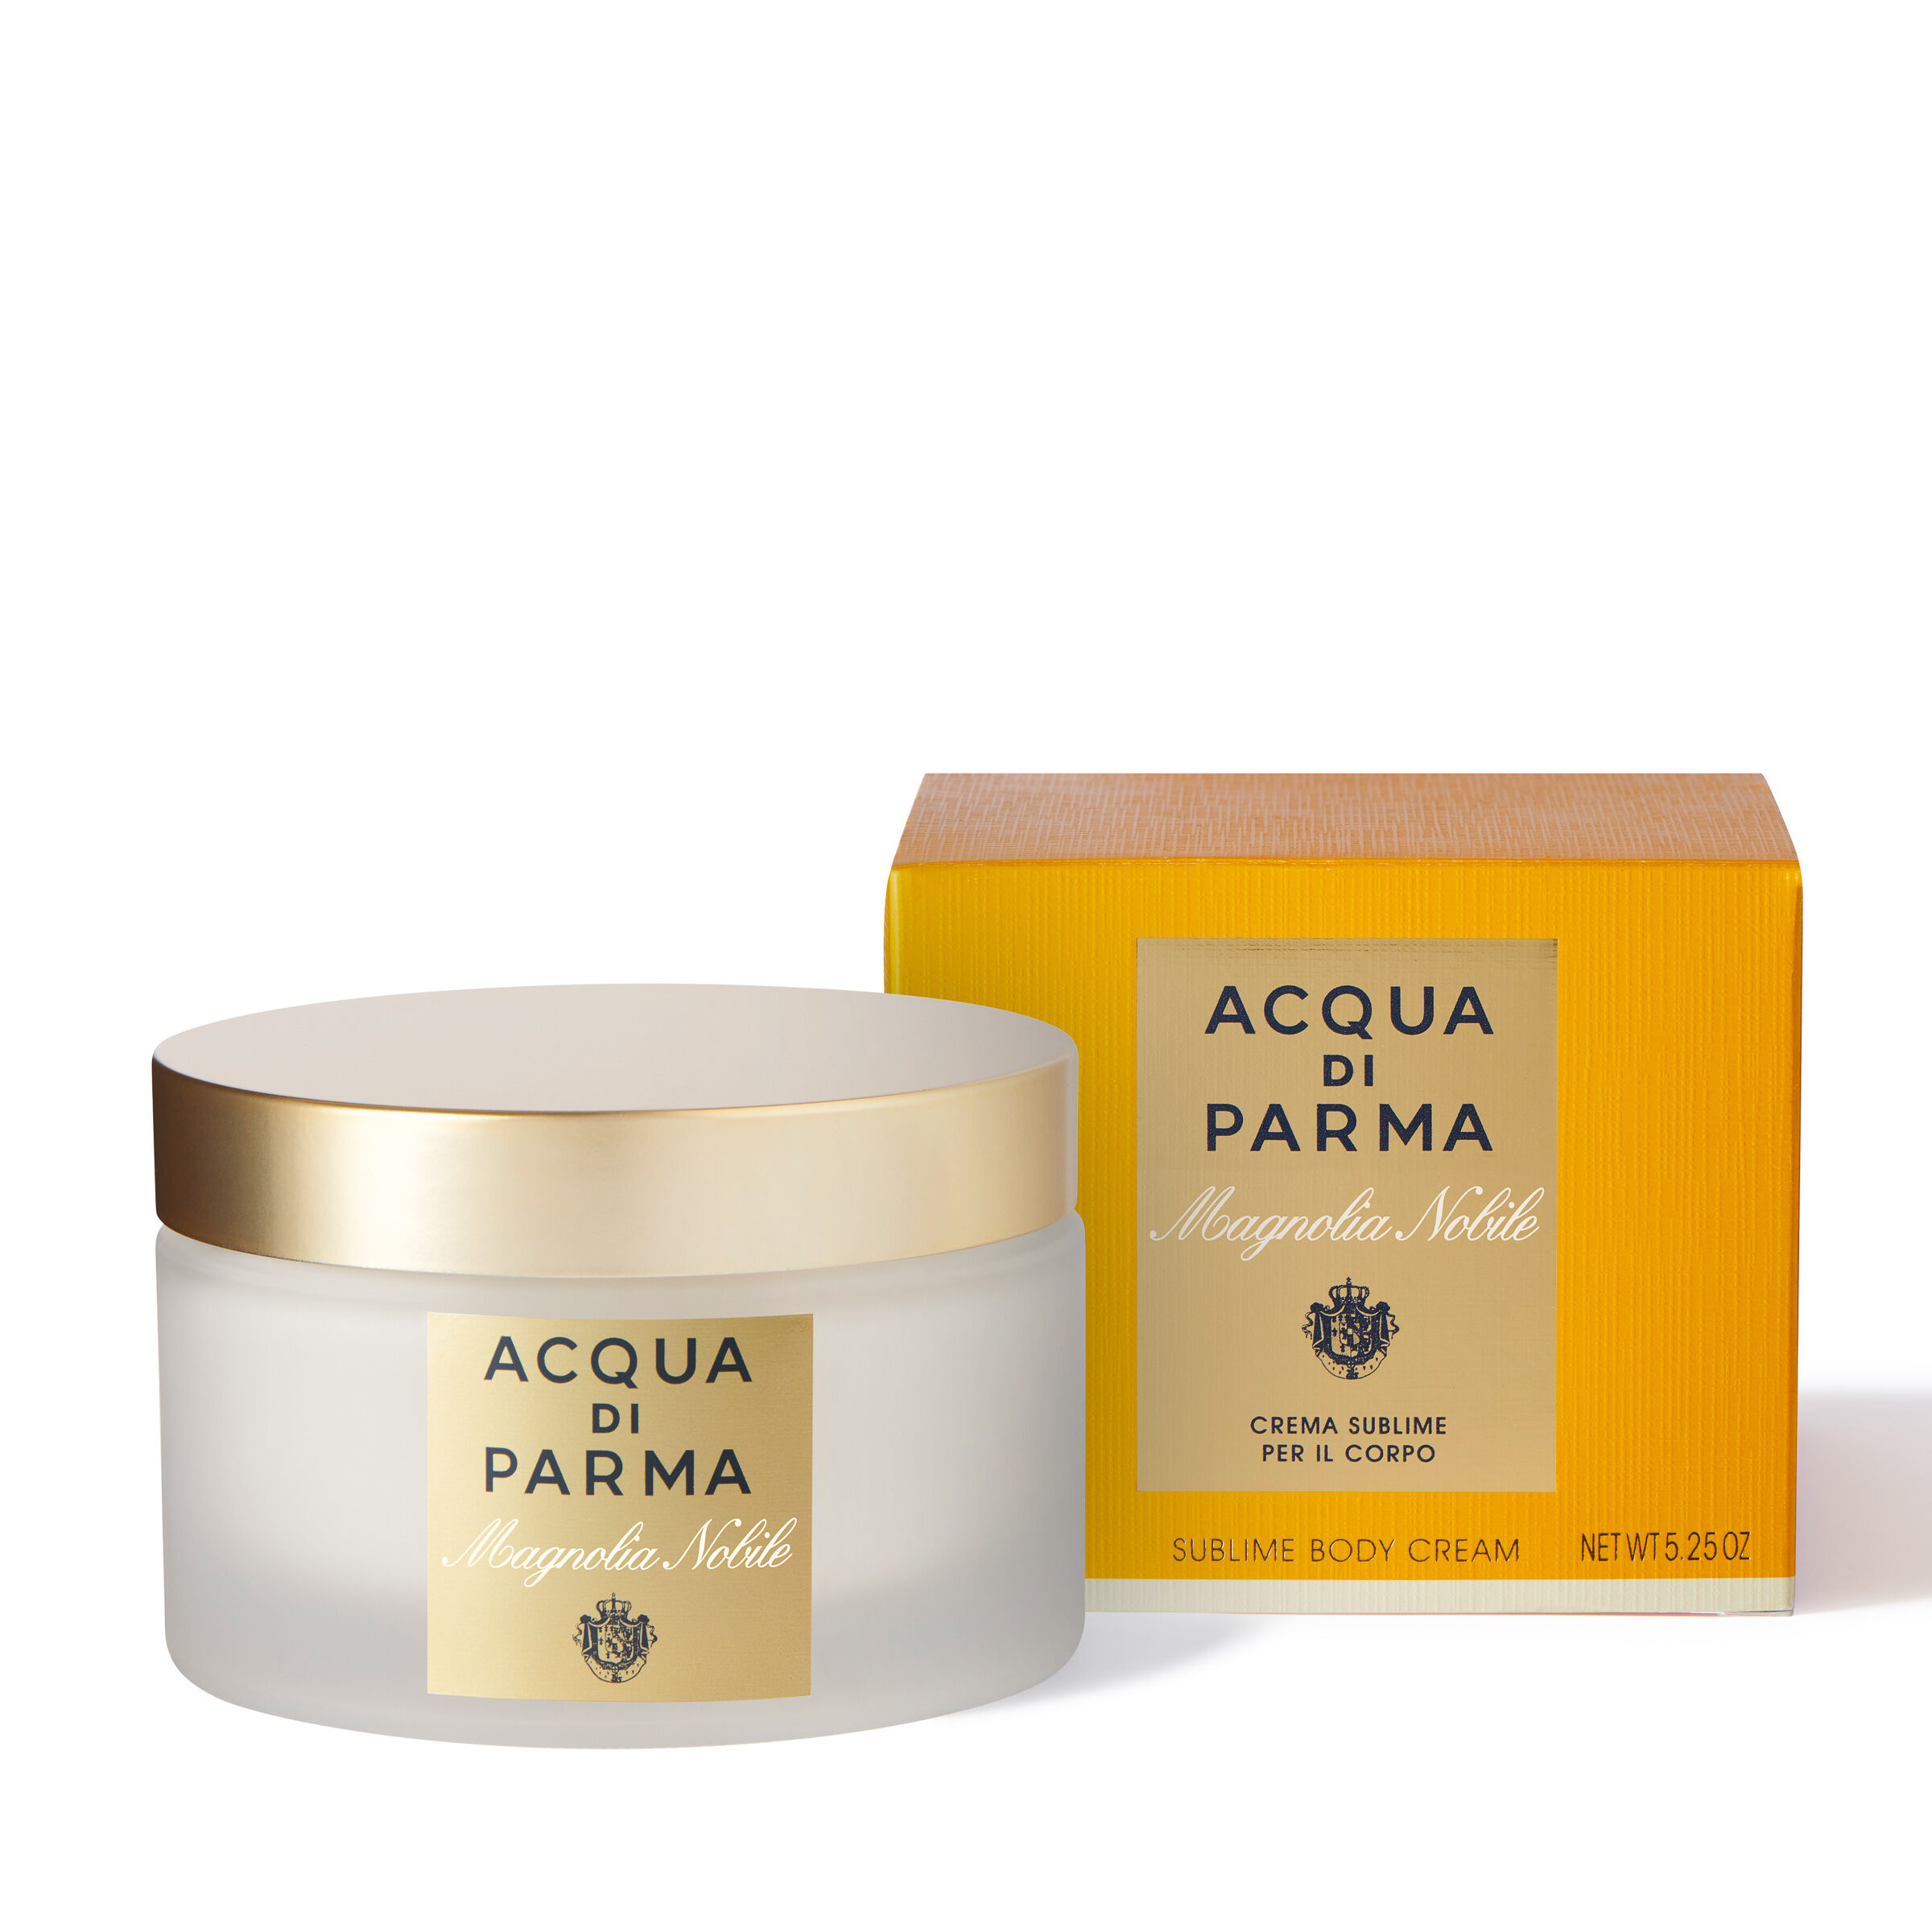 Sublime body cream SUBLIME BODY CREAM | Acqua di Parma